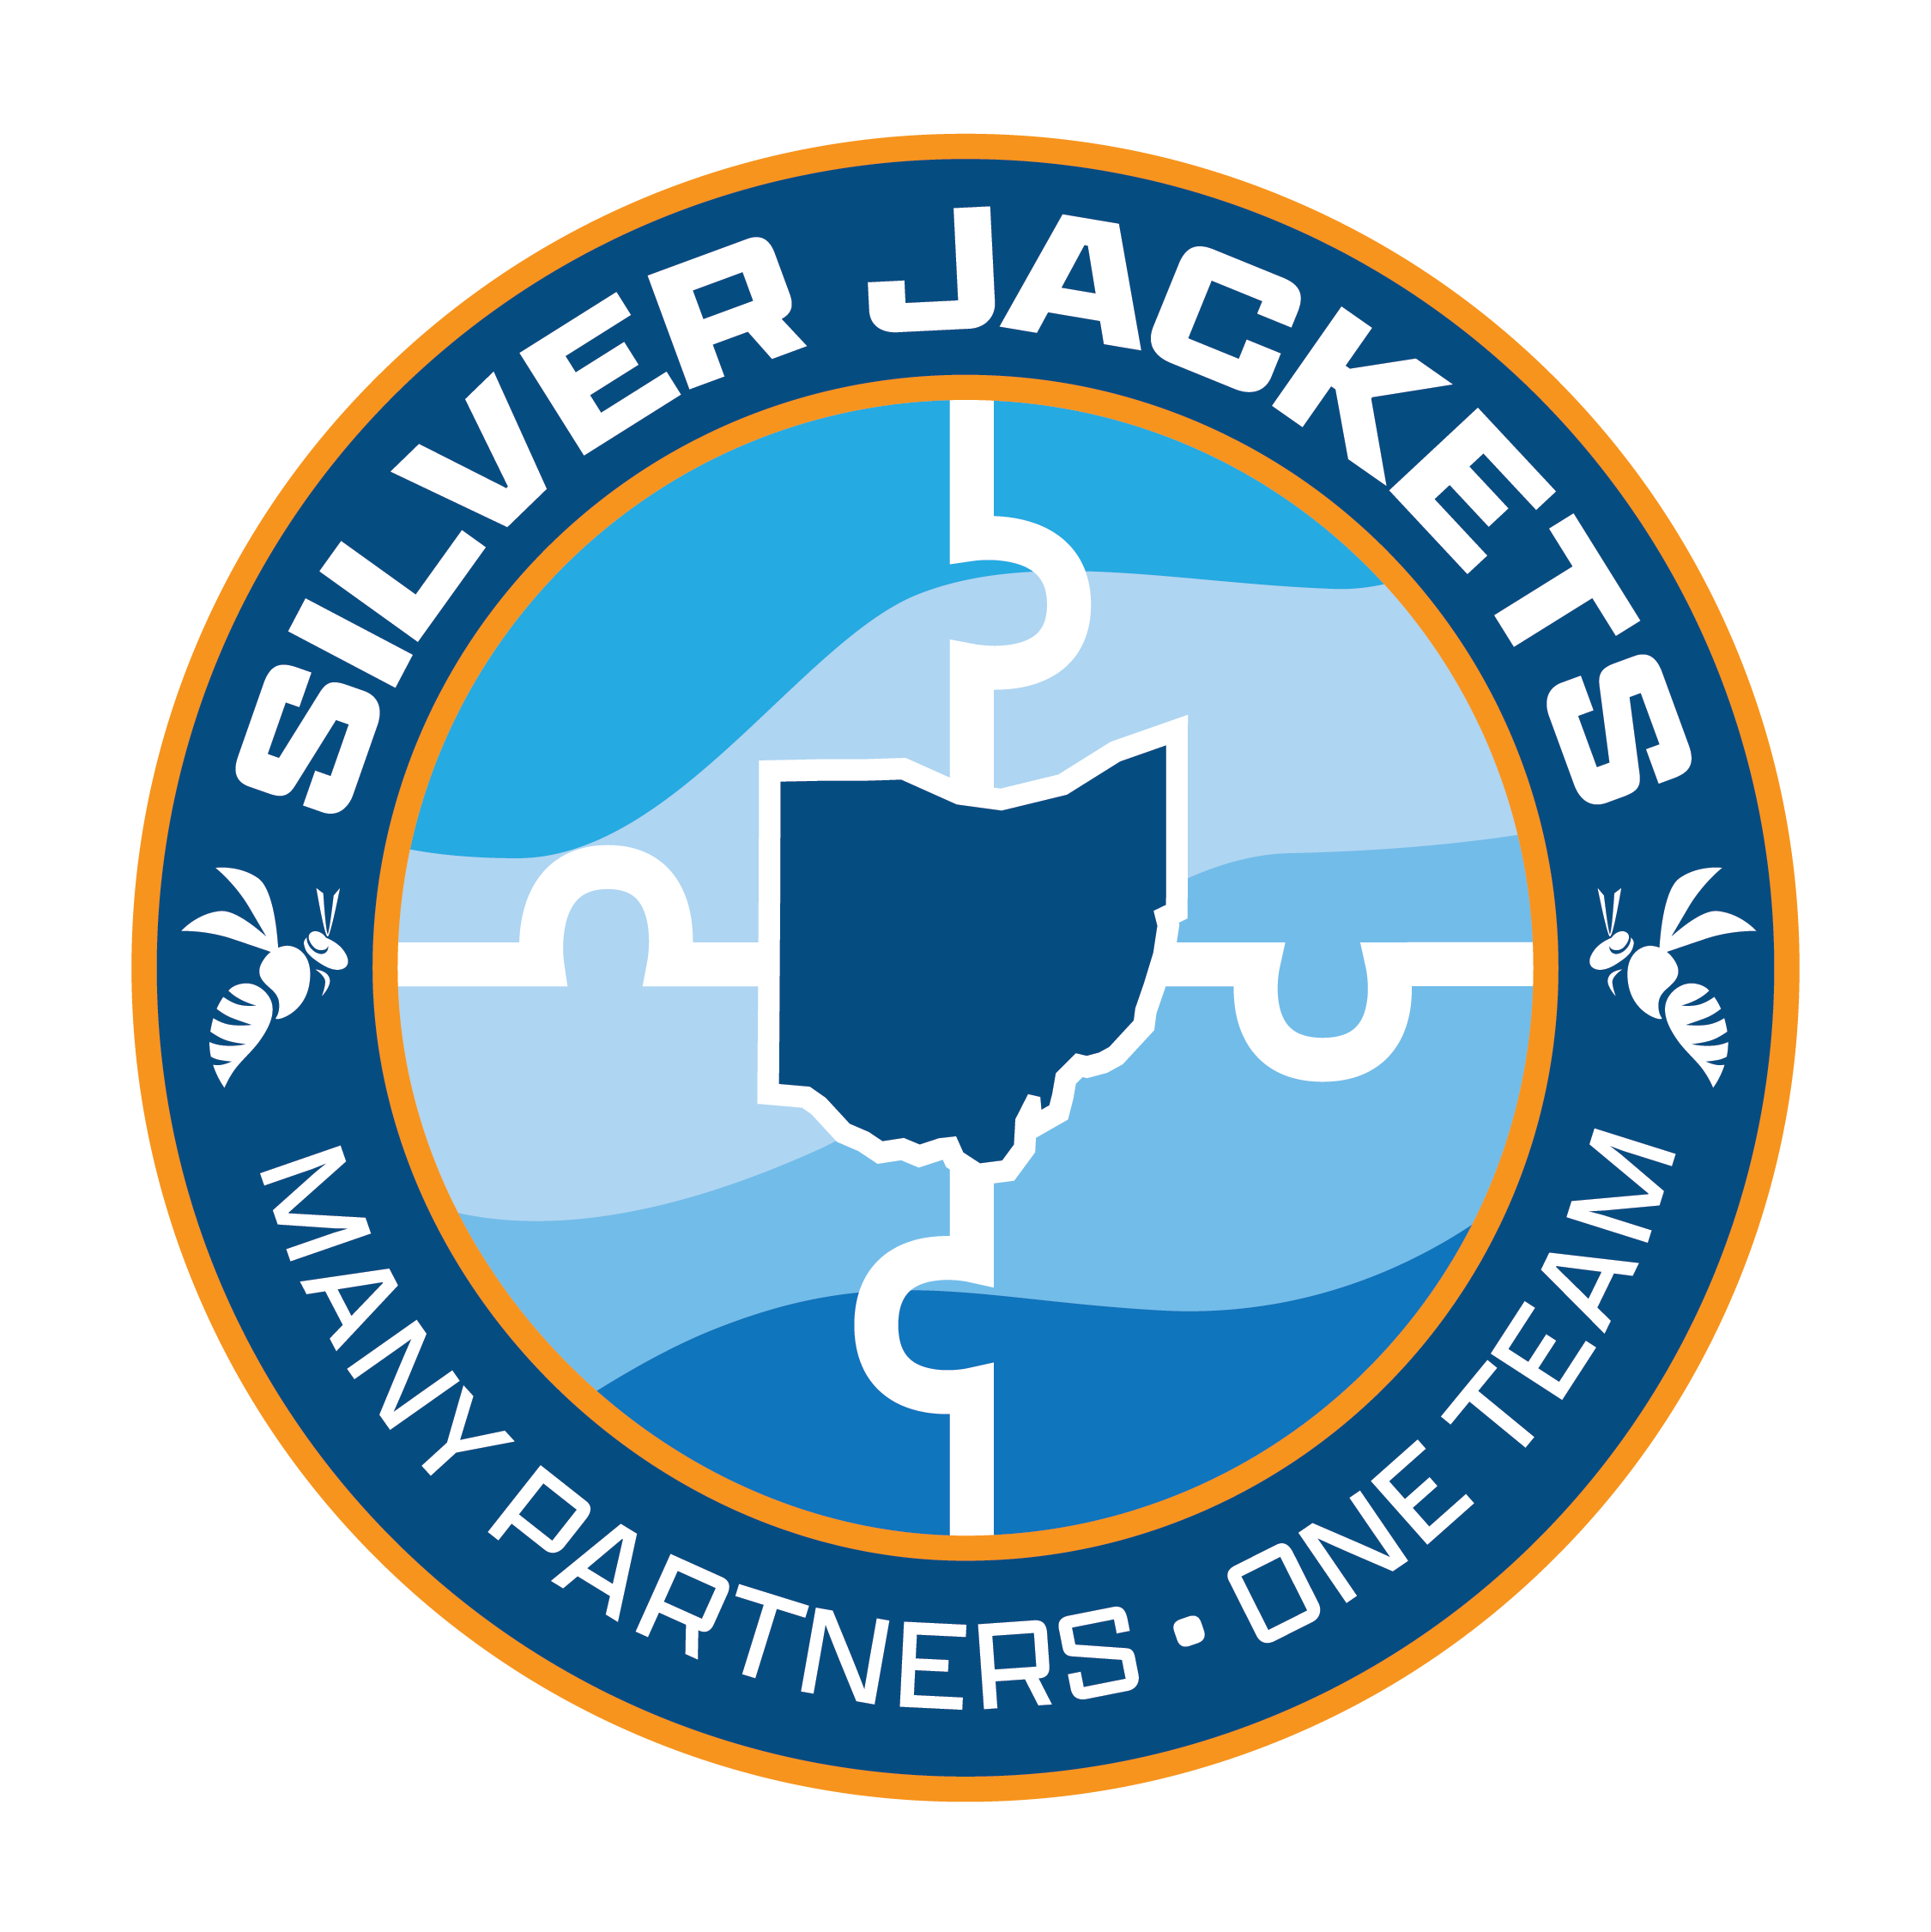 Ohio Silver Jackets logo